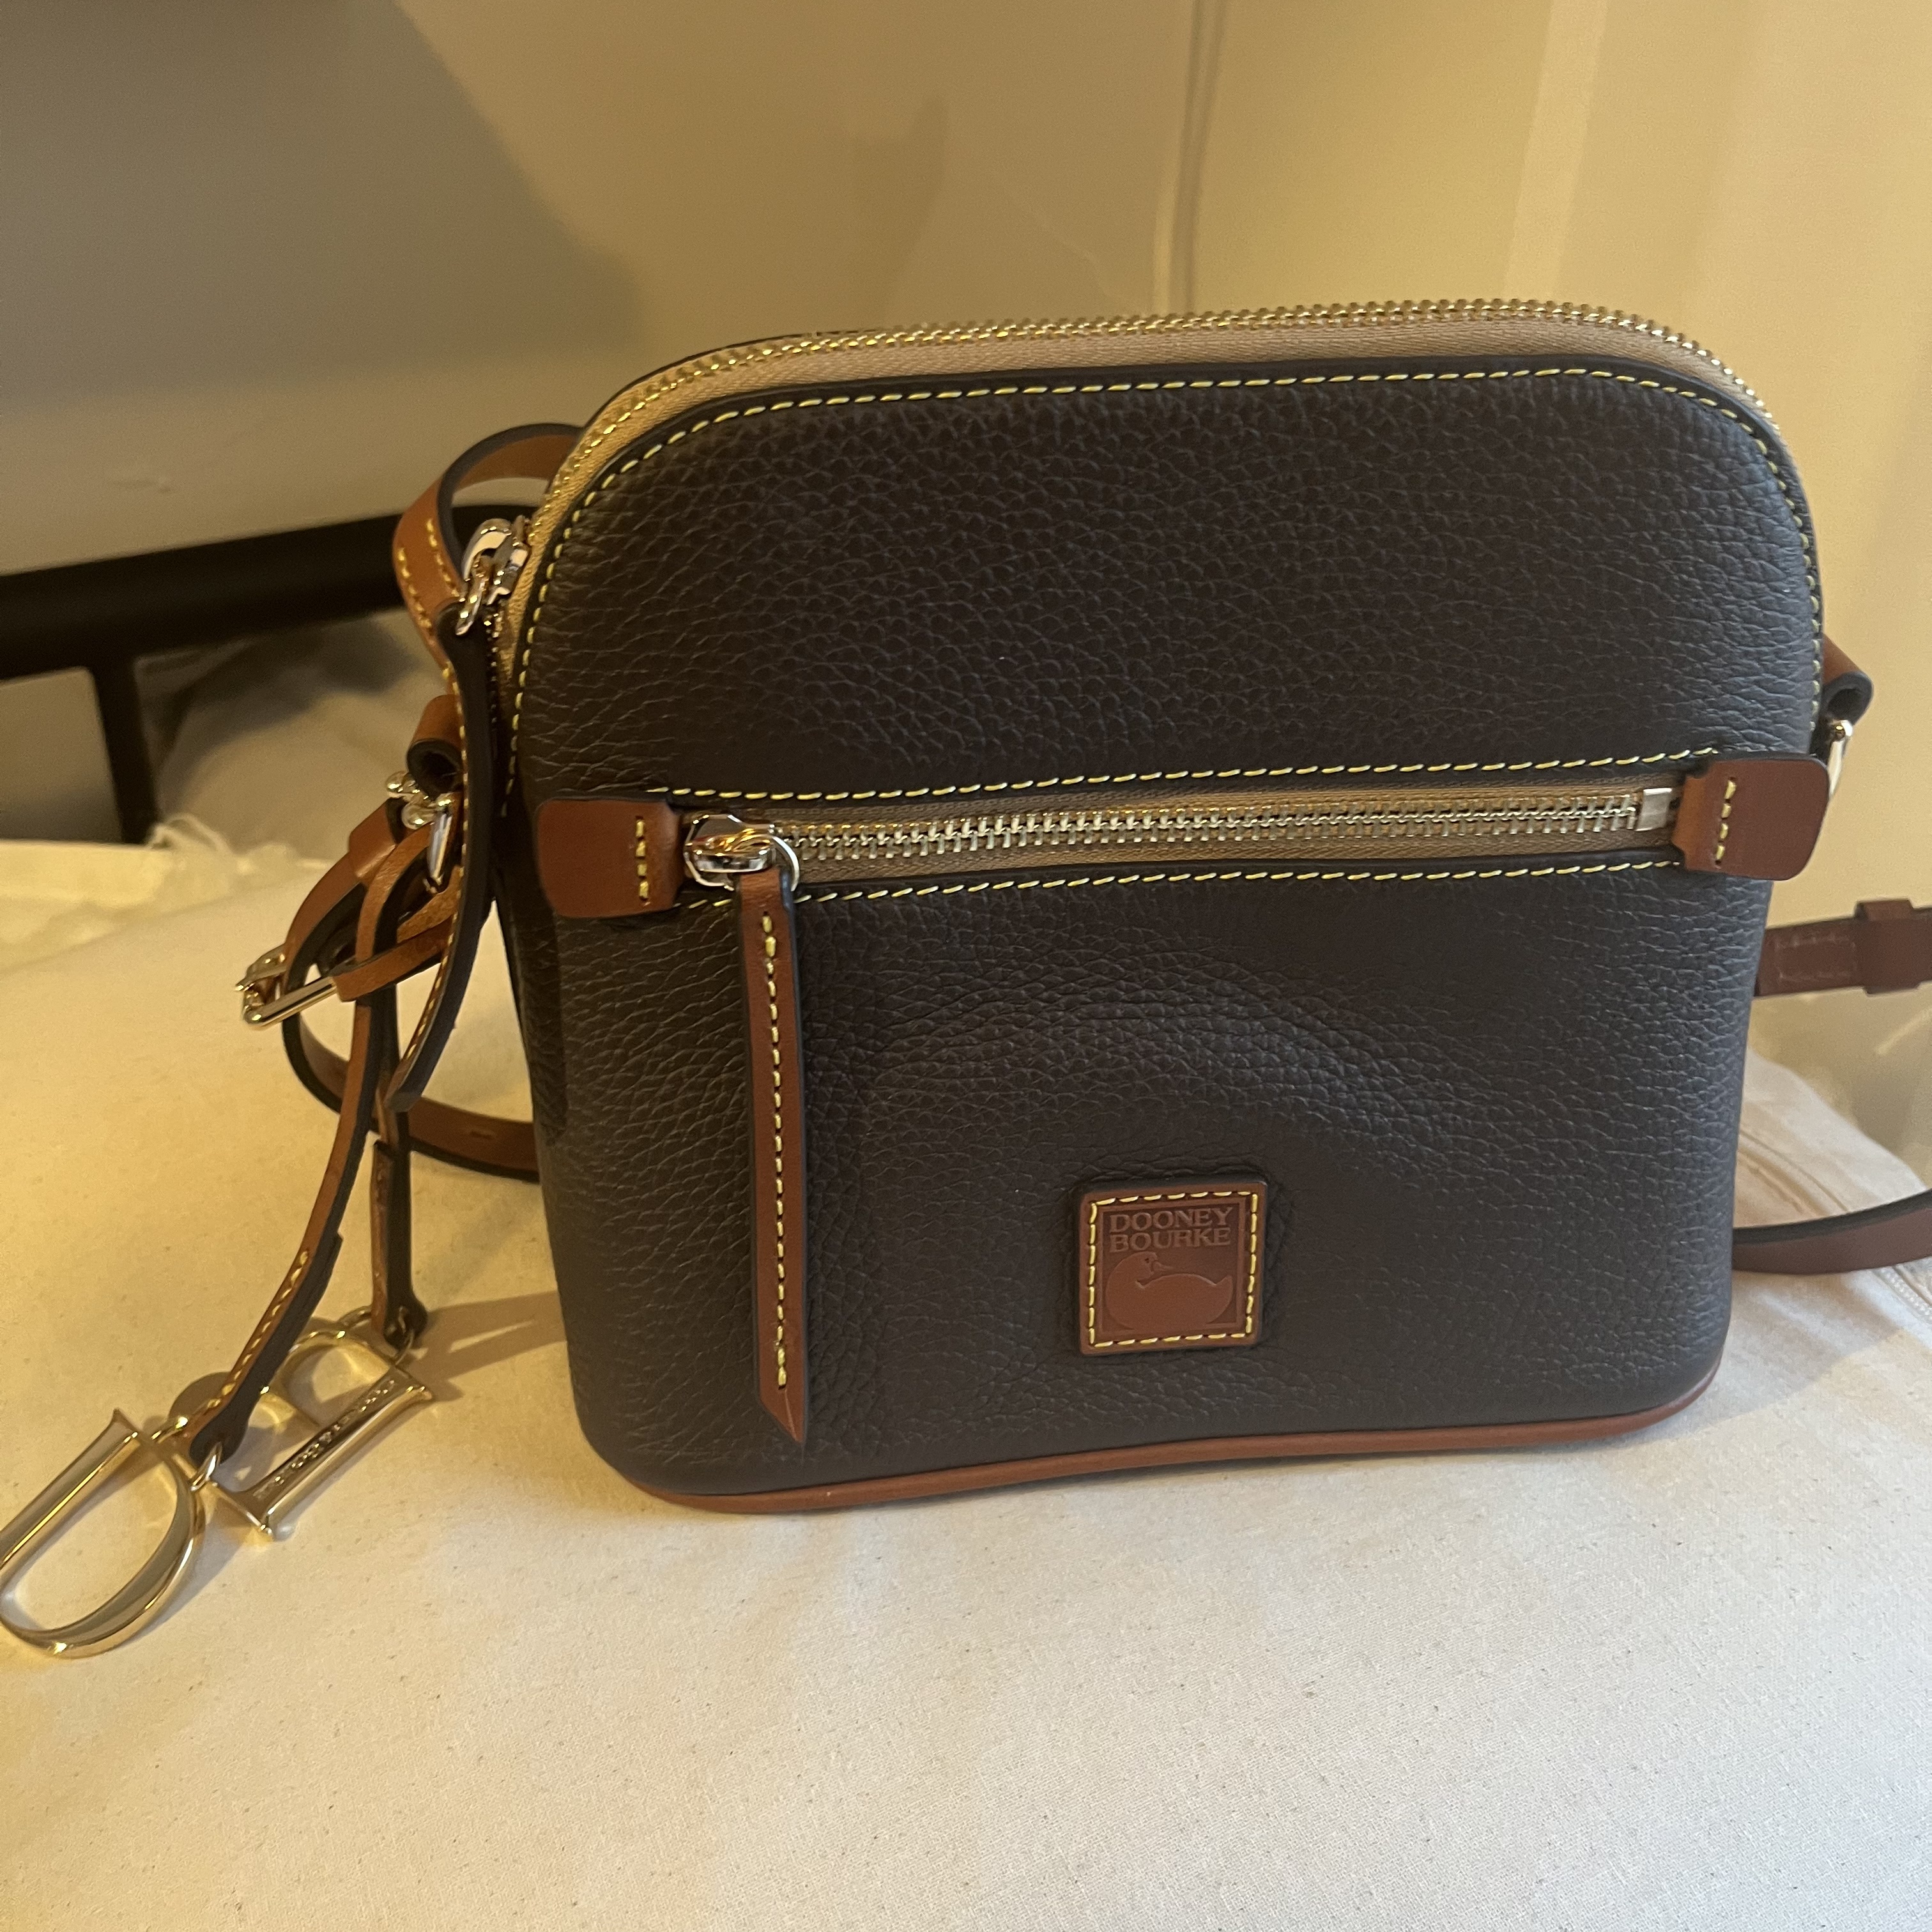 Handbag Review CAMERON GUITAR